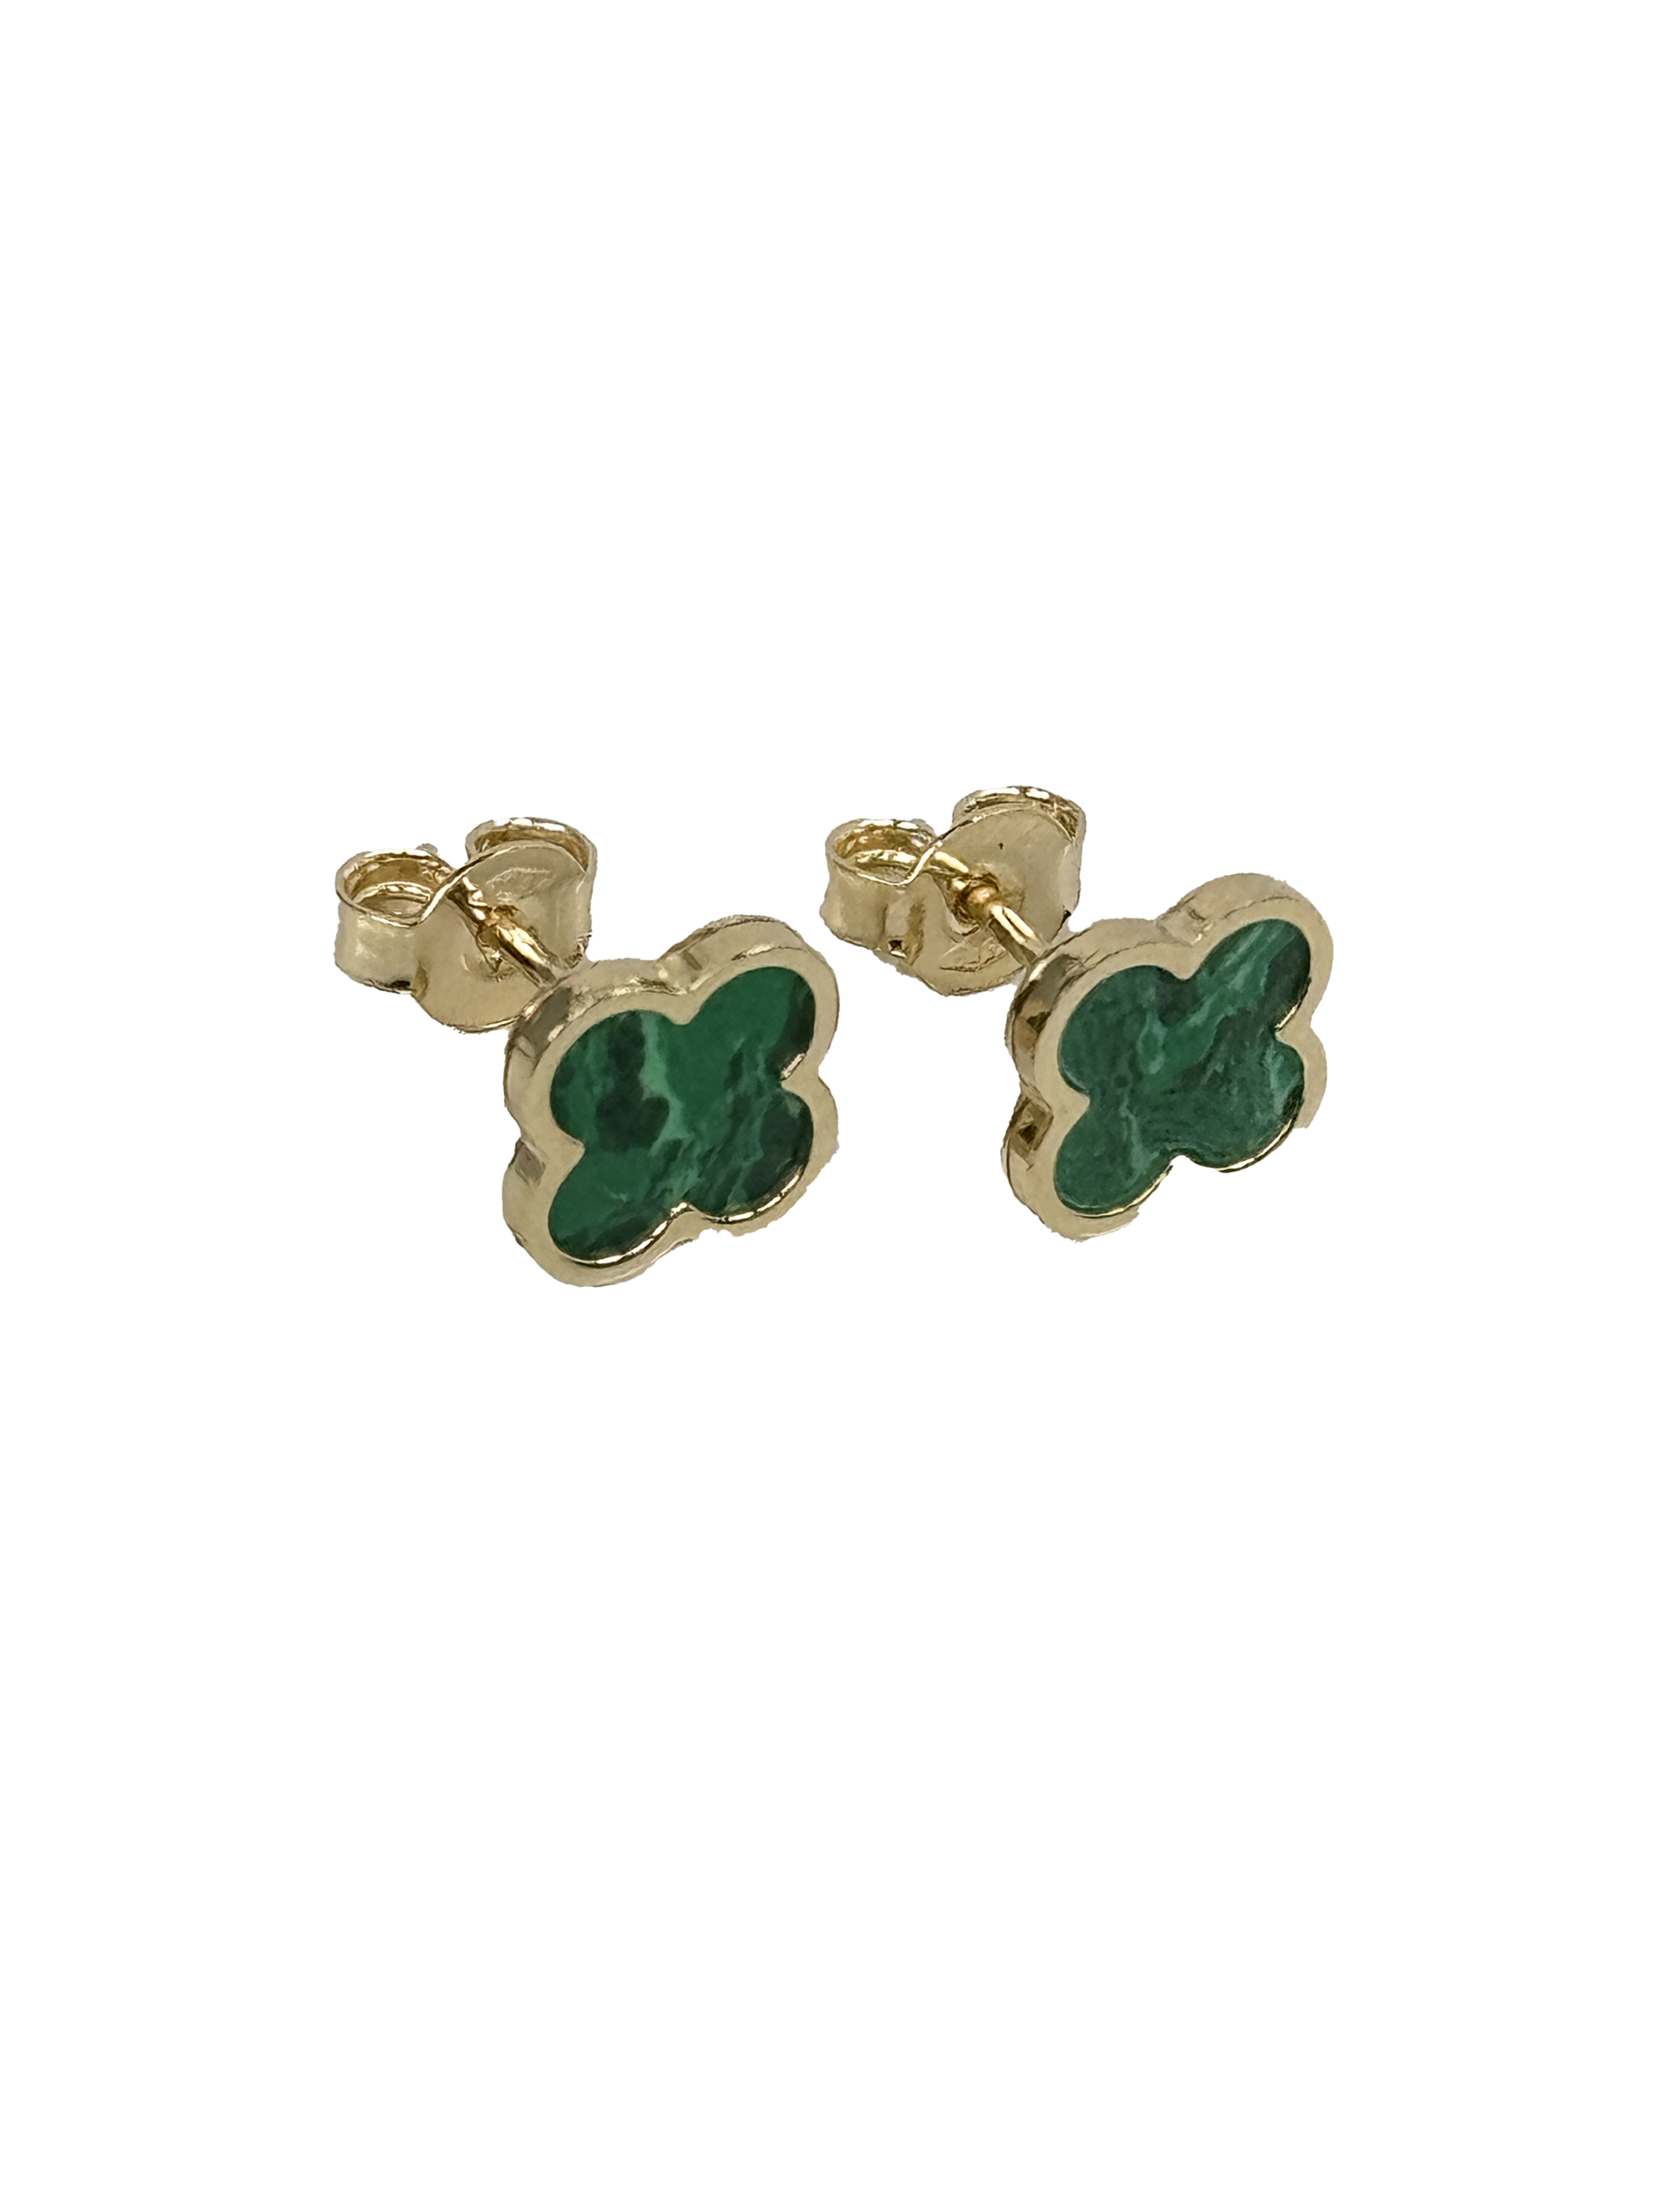 Χρυσά σκουλαρίκια με πράσινο μαλαχίτη Τετράφυλλα 7,0 χλστ